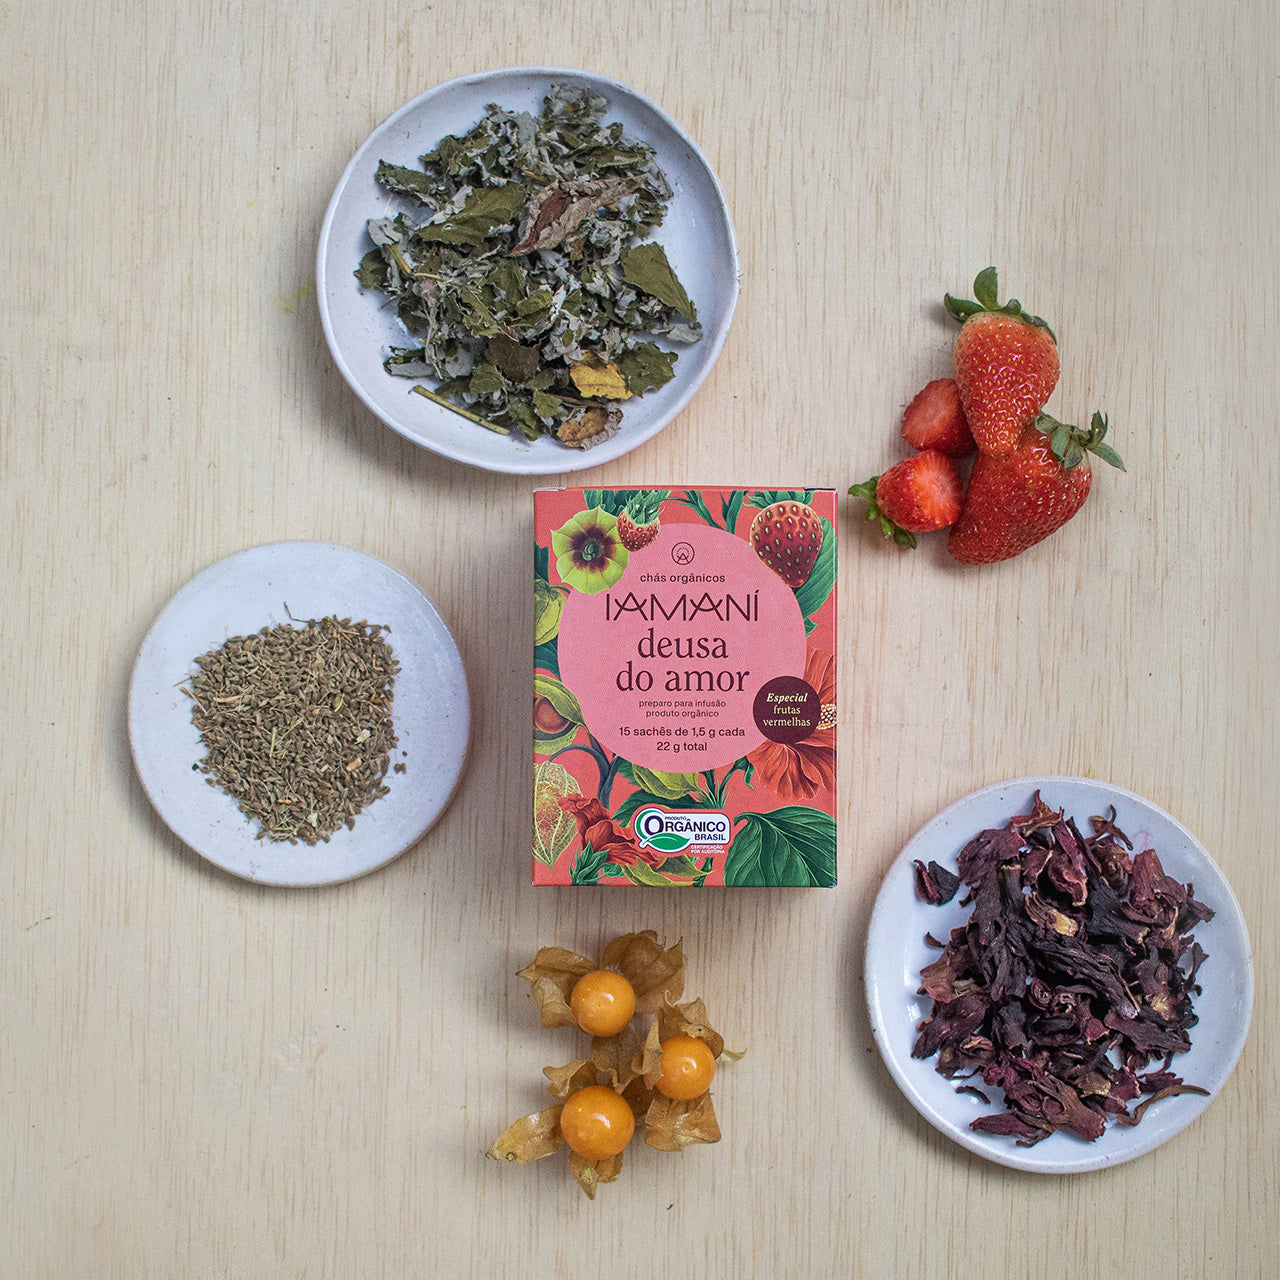 Chá Orgânico Deusa do Amor - Especial Frutas Vermelhas - 15 sachês